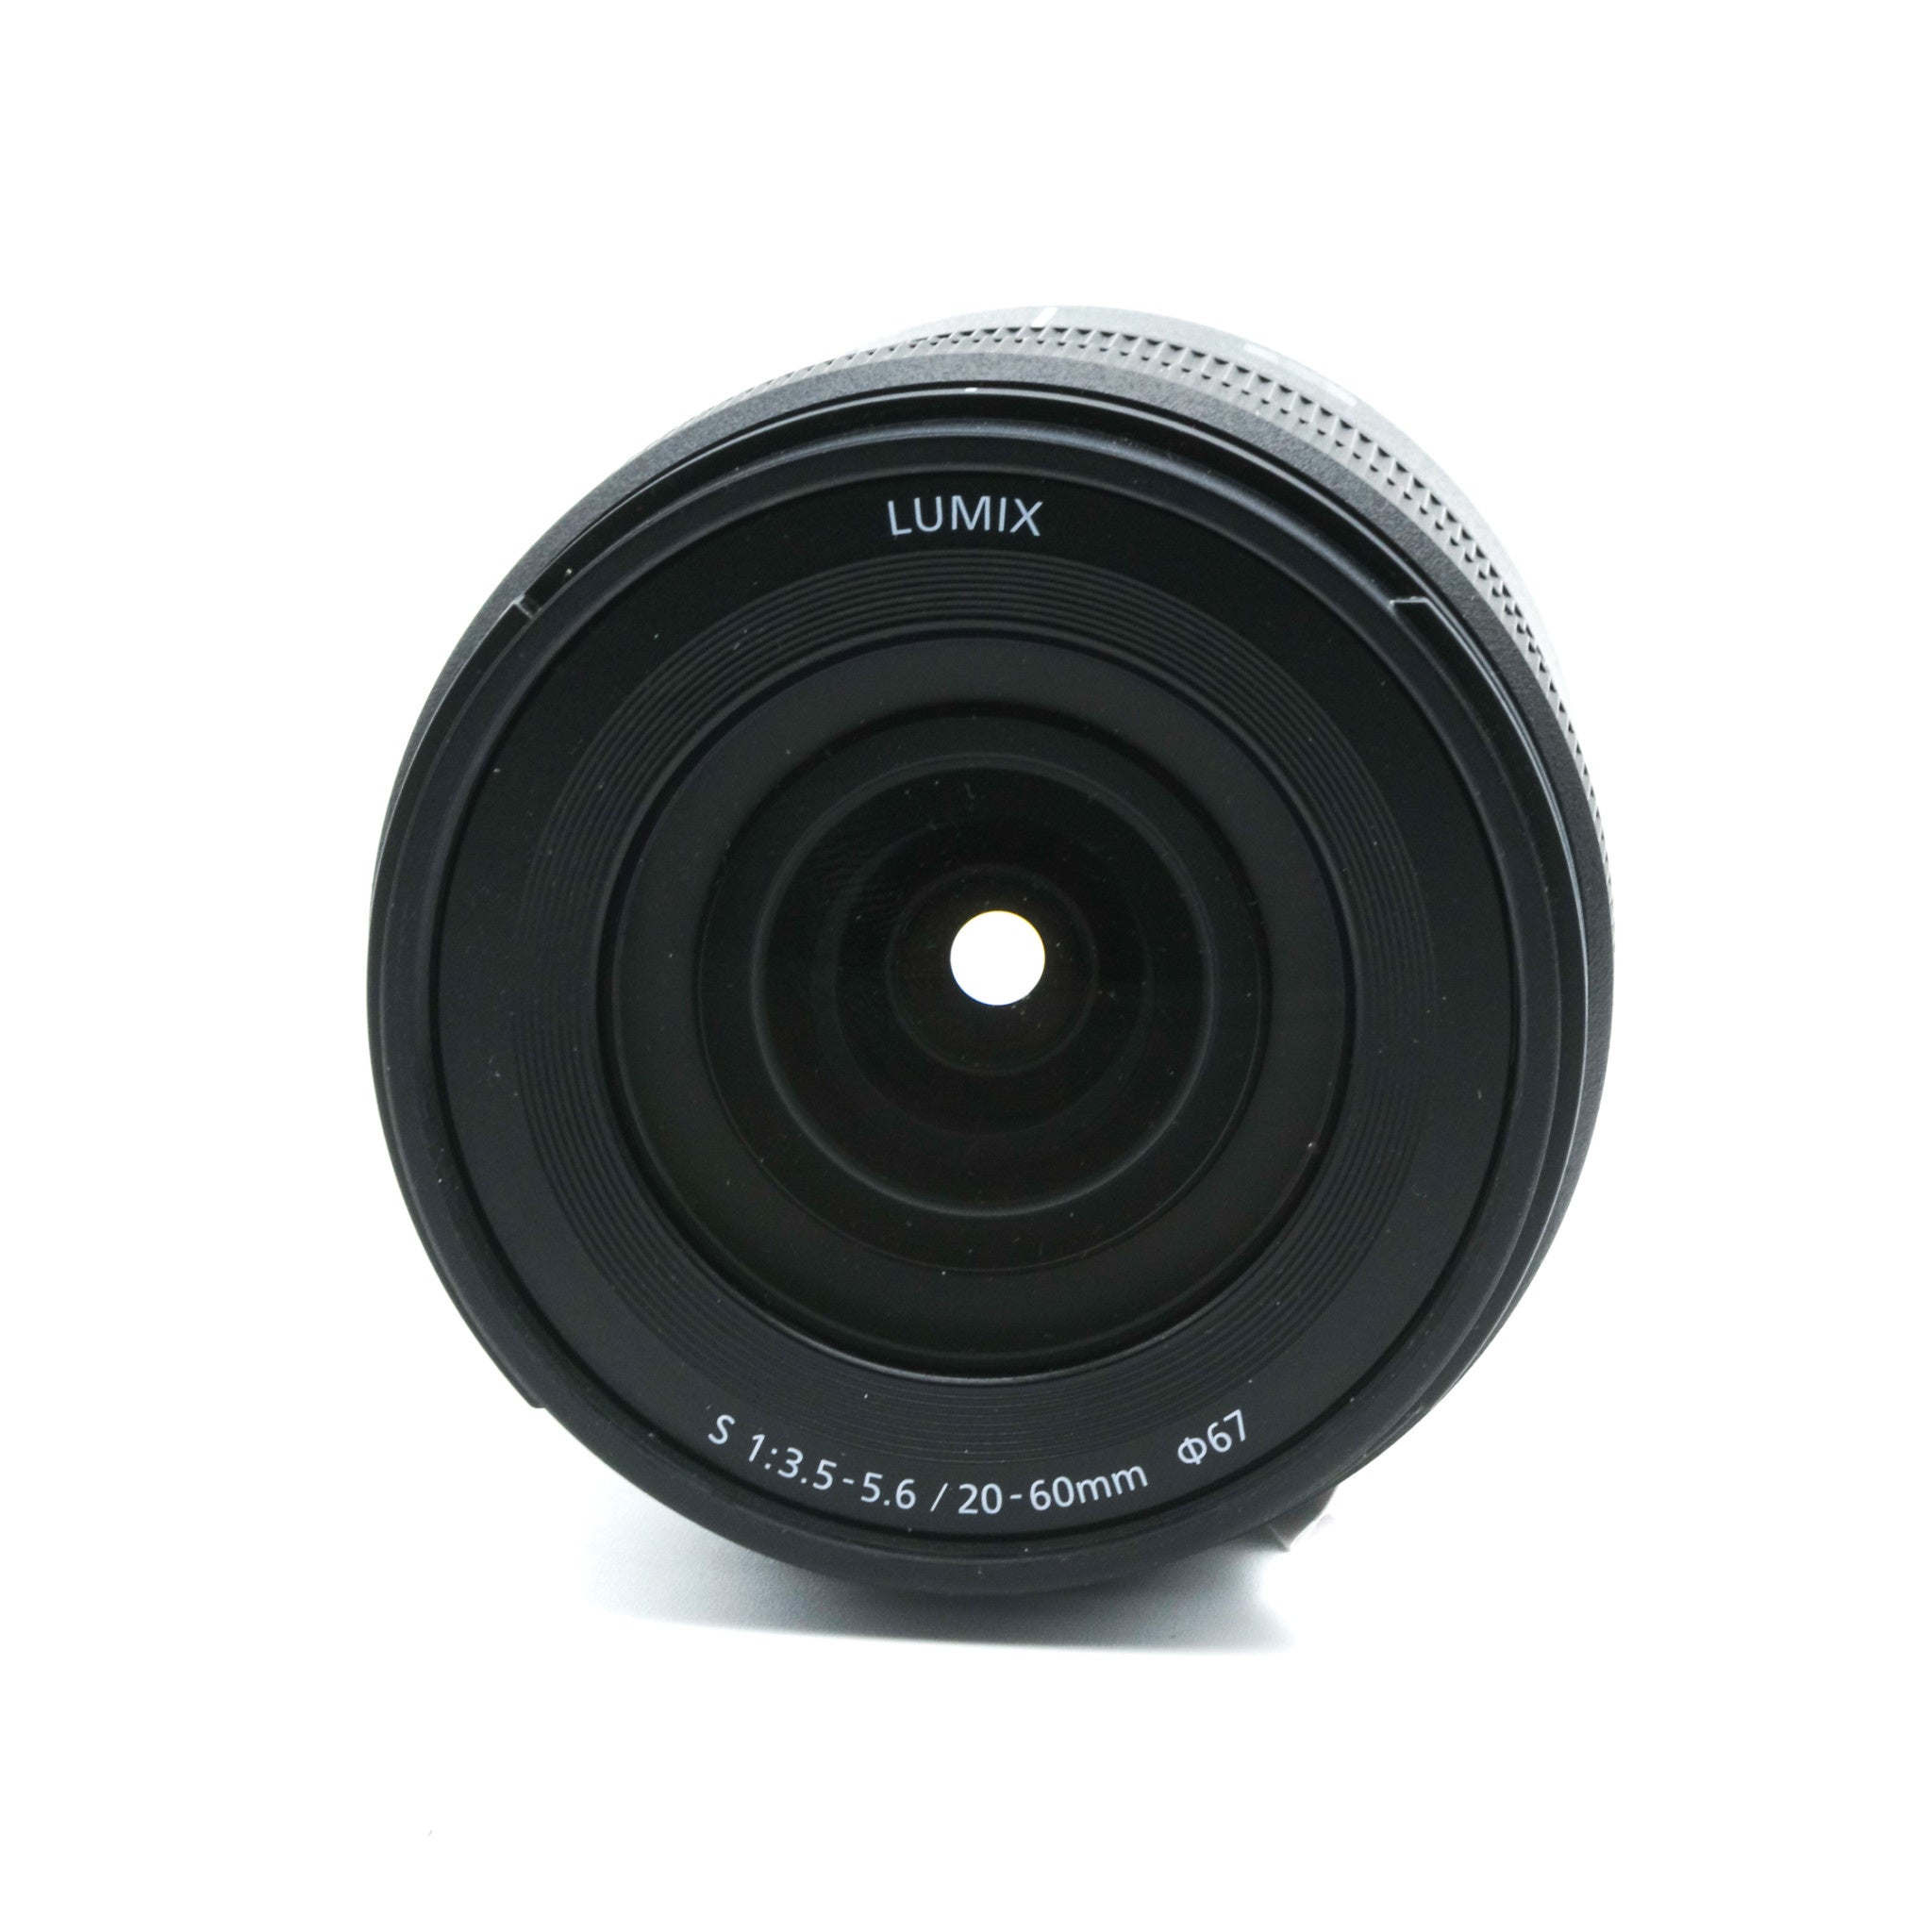 Lumix S R20-60mm f/3.5-5.6